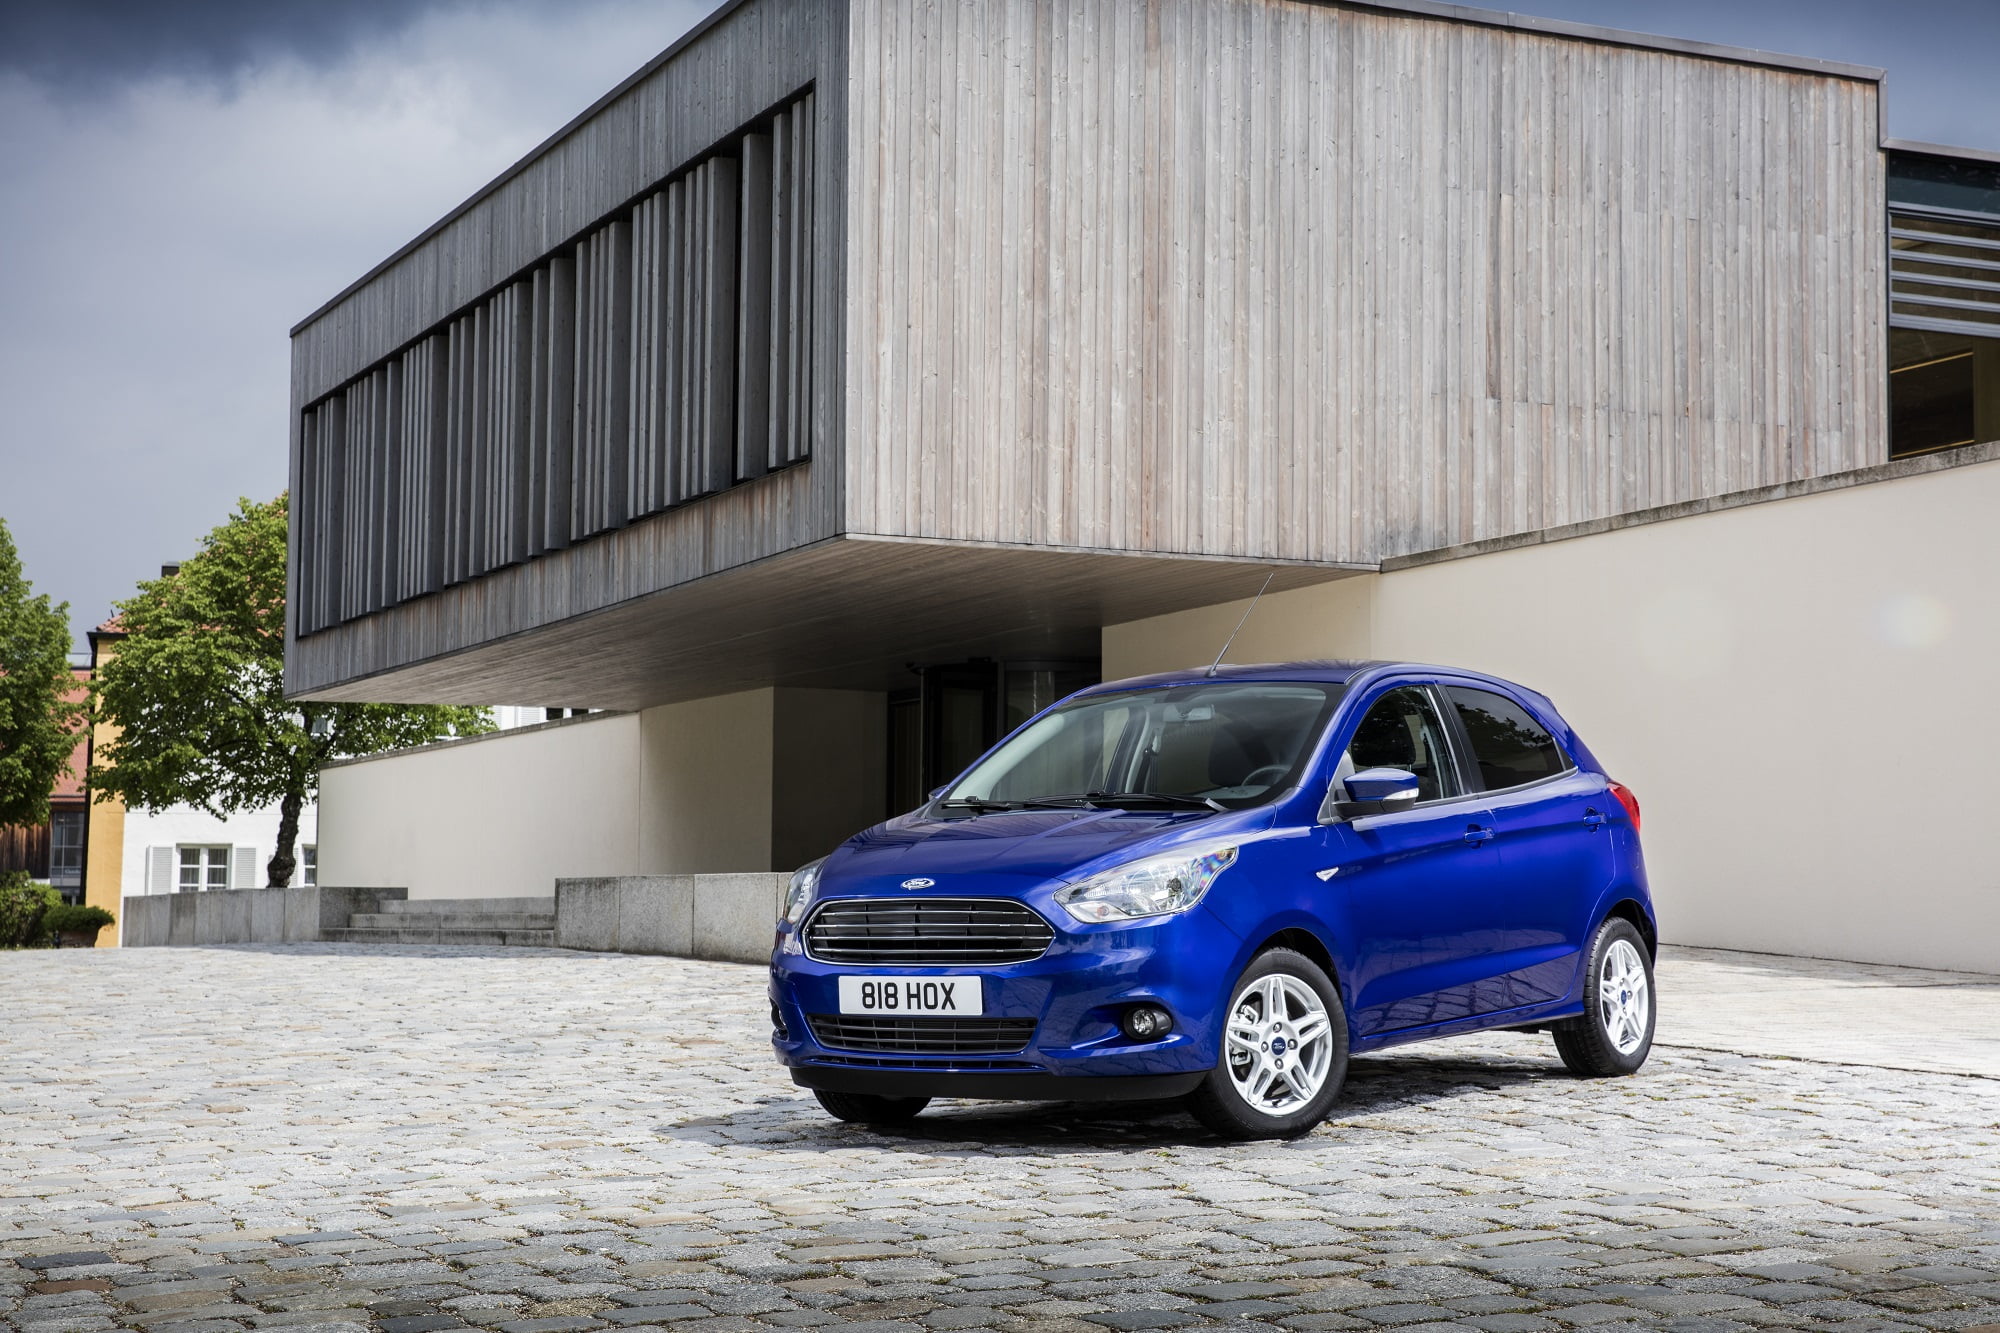 El Nuevo Ford KA+, interior espacioso, consumos económicos y divertida conducción